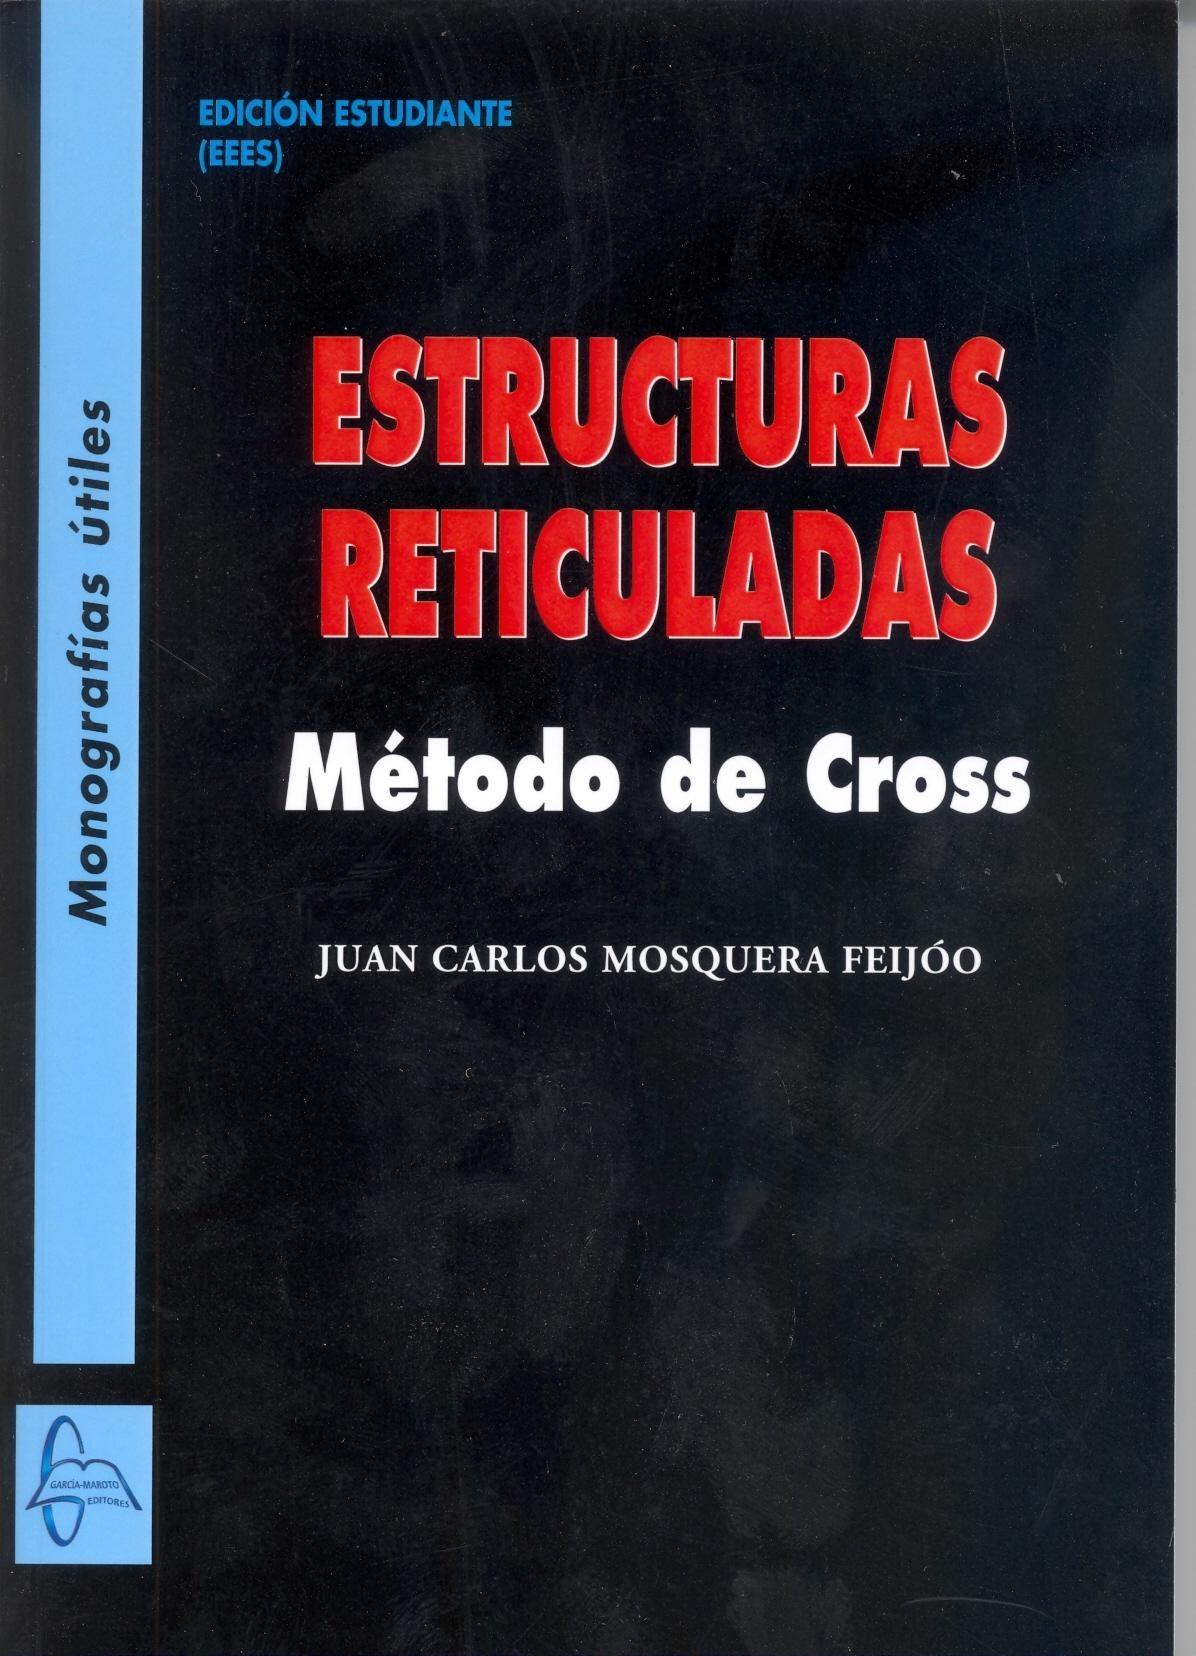 ESTRUCTURAS RETICULADAS "MÉTODO DE CROSS". 